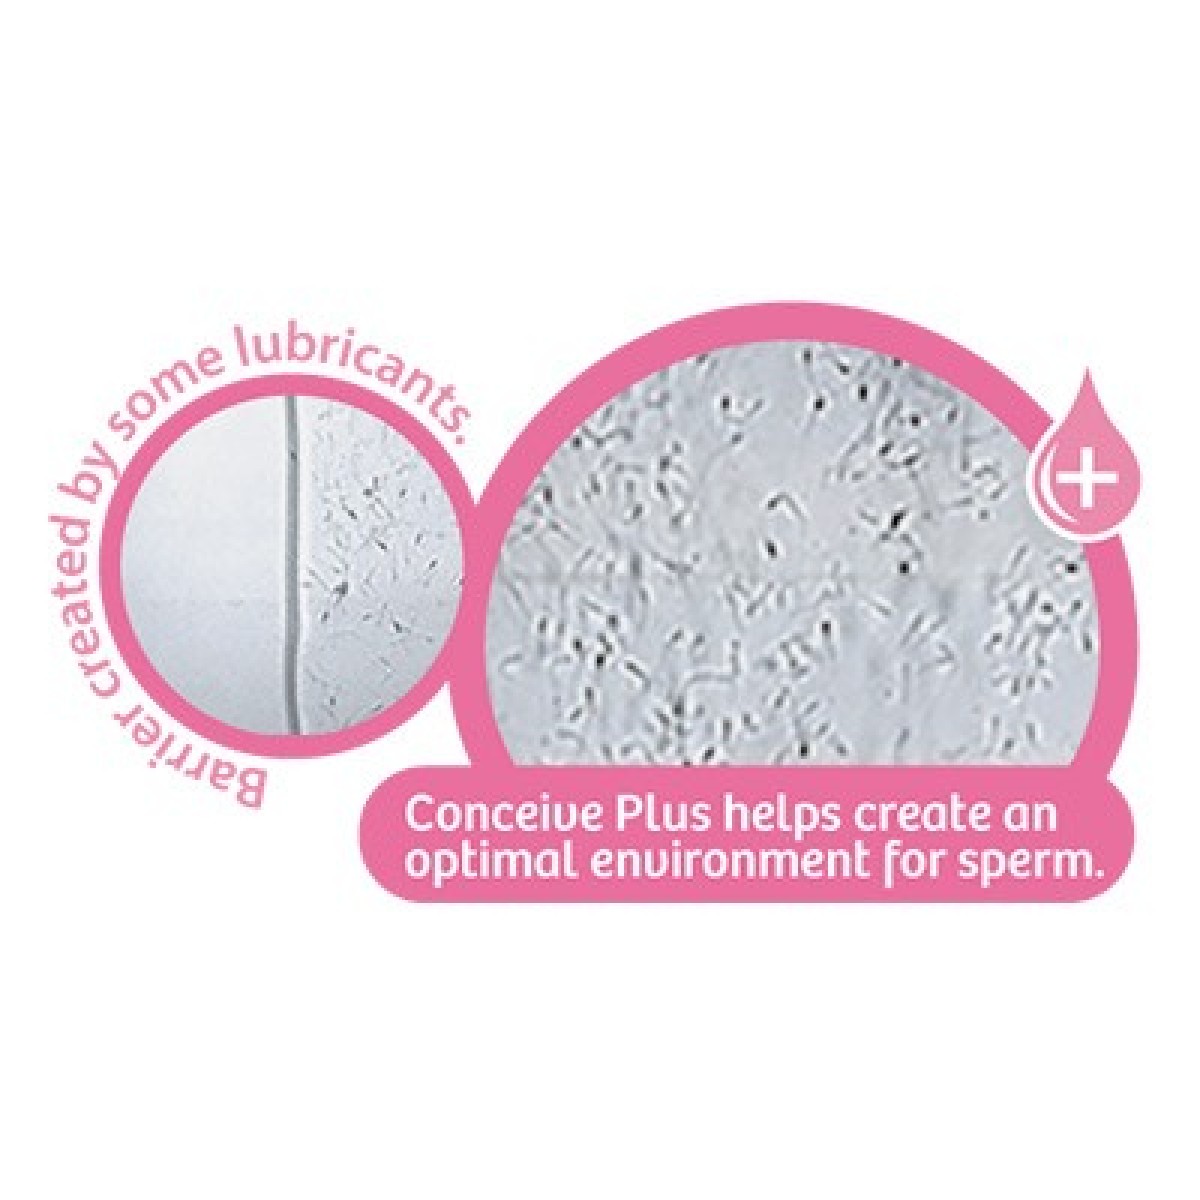 Conceive Plus 助孕潤滑劑 - Conceive Plus 受孕潤滑劑 (75ml + 充推管 8枝裝)